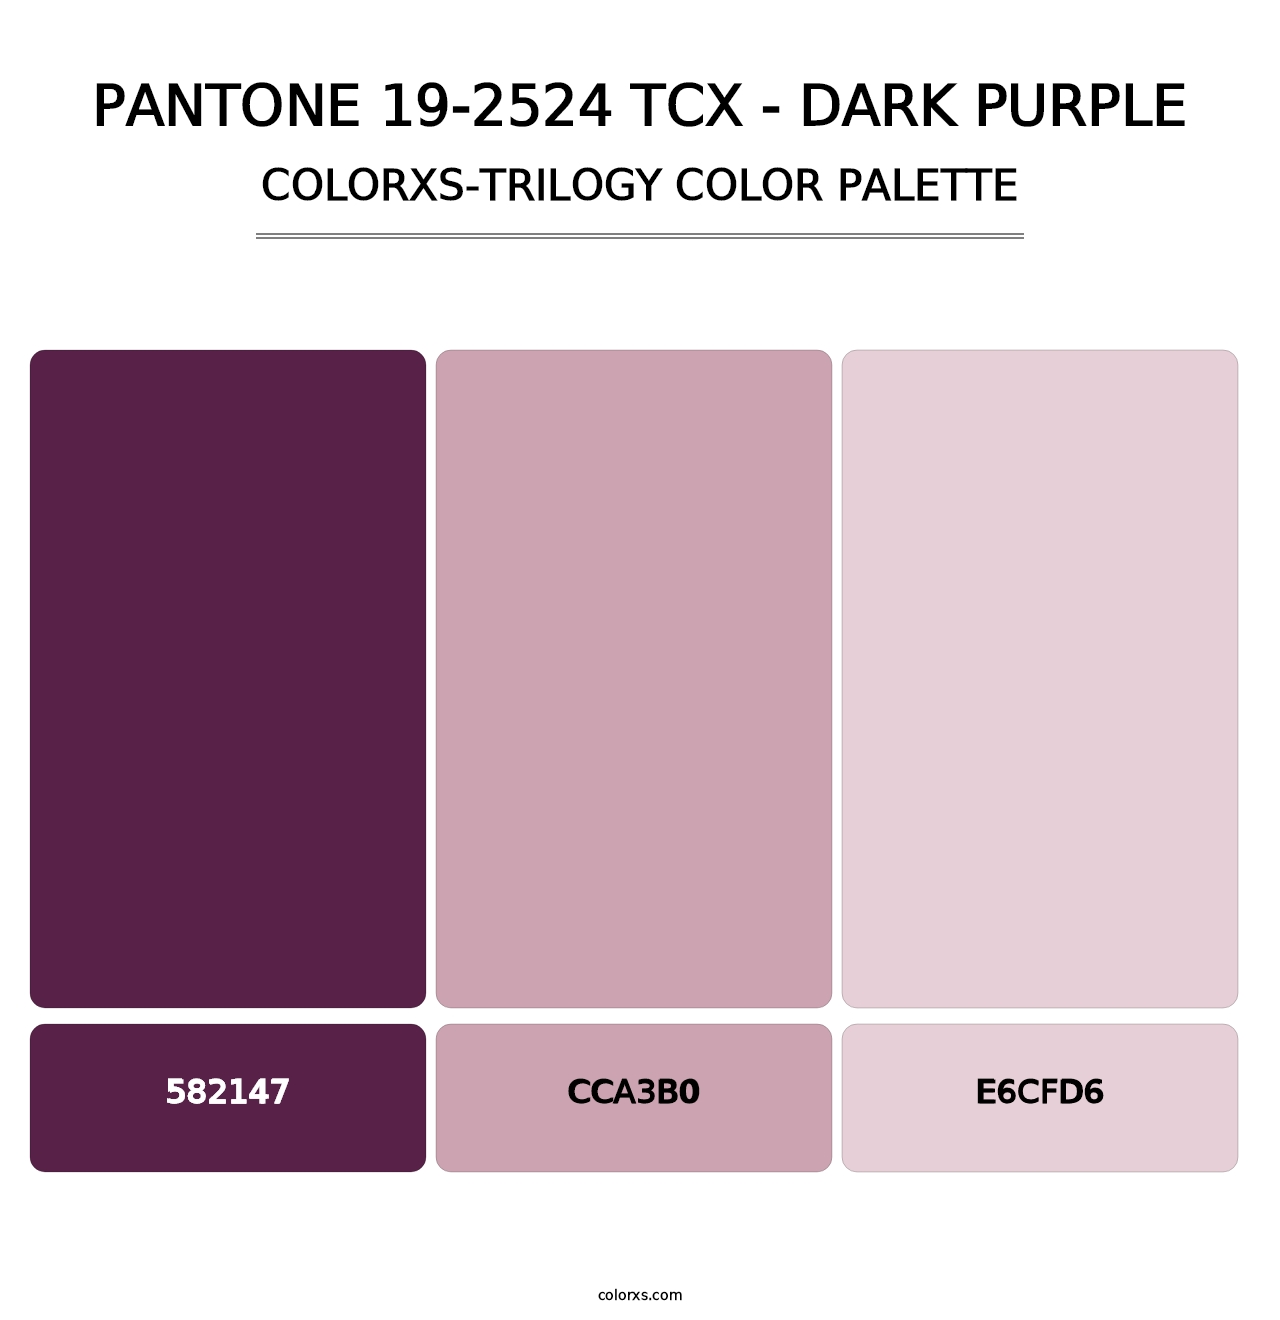 PANTONE 19-2524 TCX - Dark Purple - Colorxs Trilogy Palette